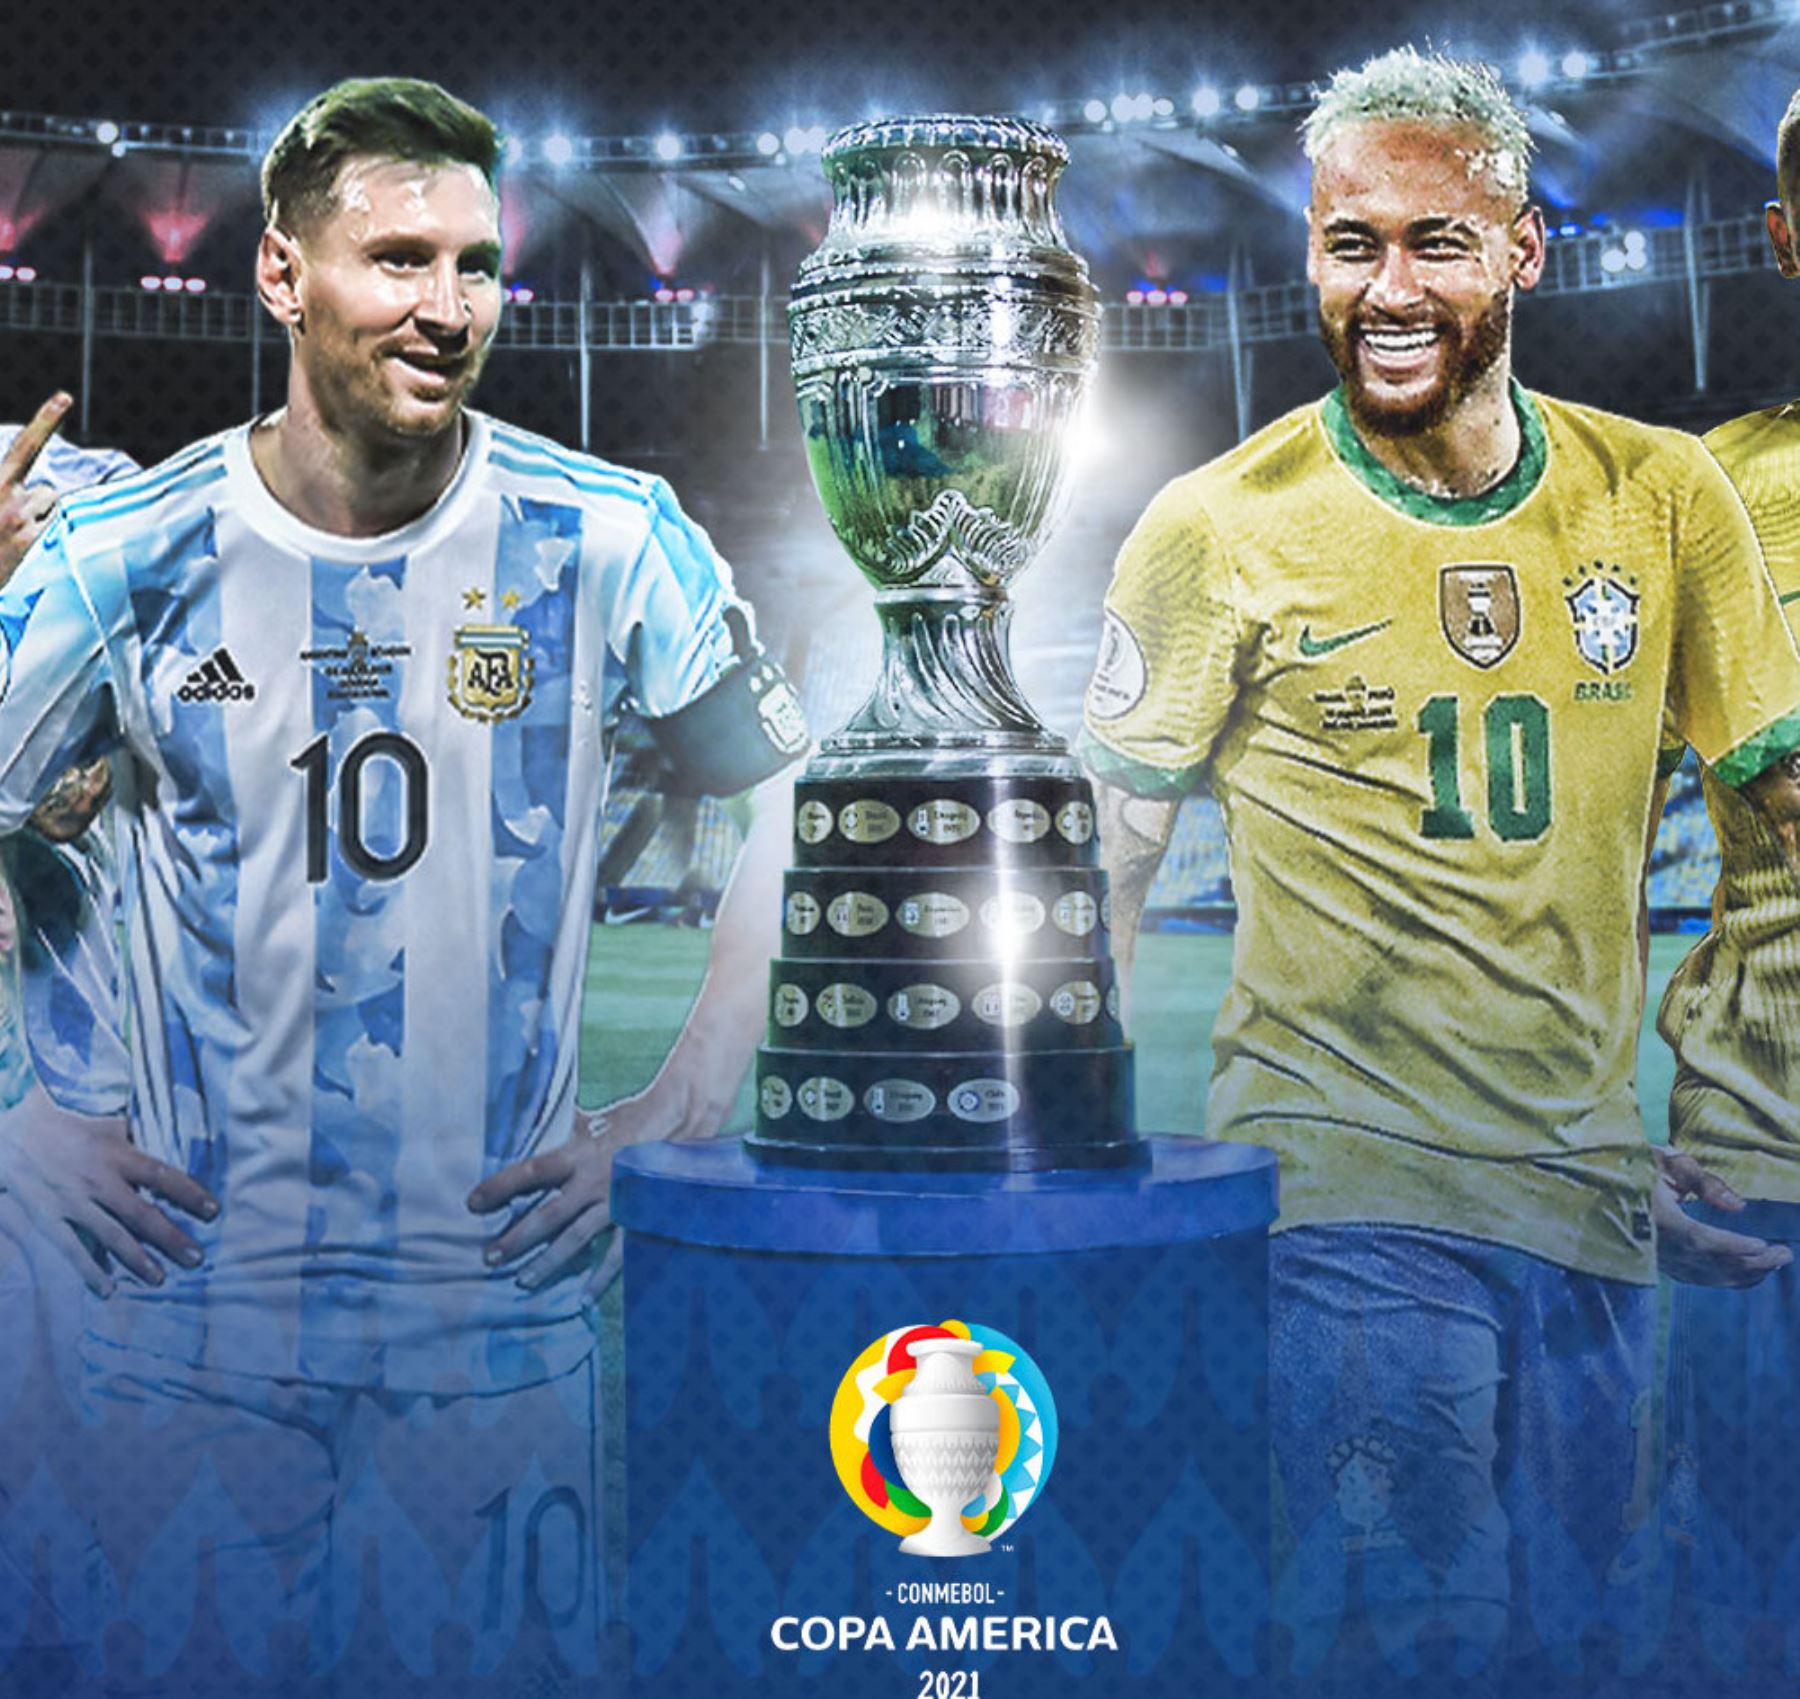 Neymar y Messi fueron elegidos los mejores jugadores de la Capa América 2021.